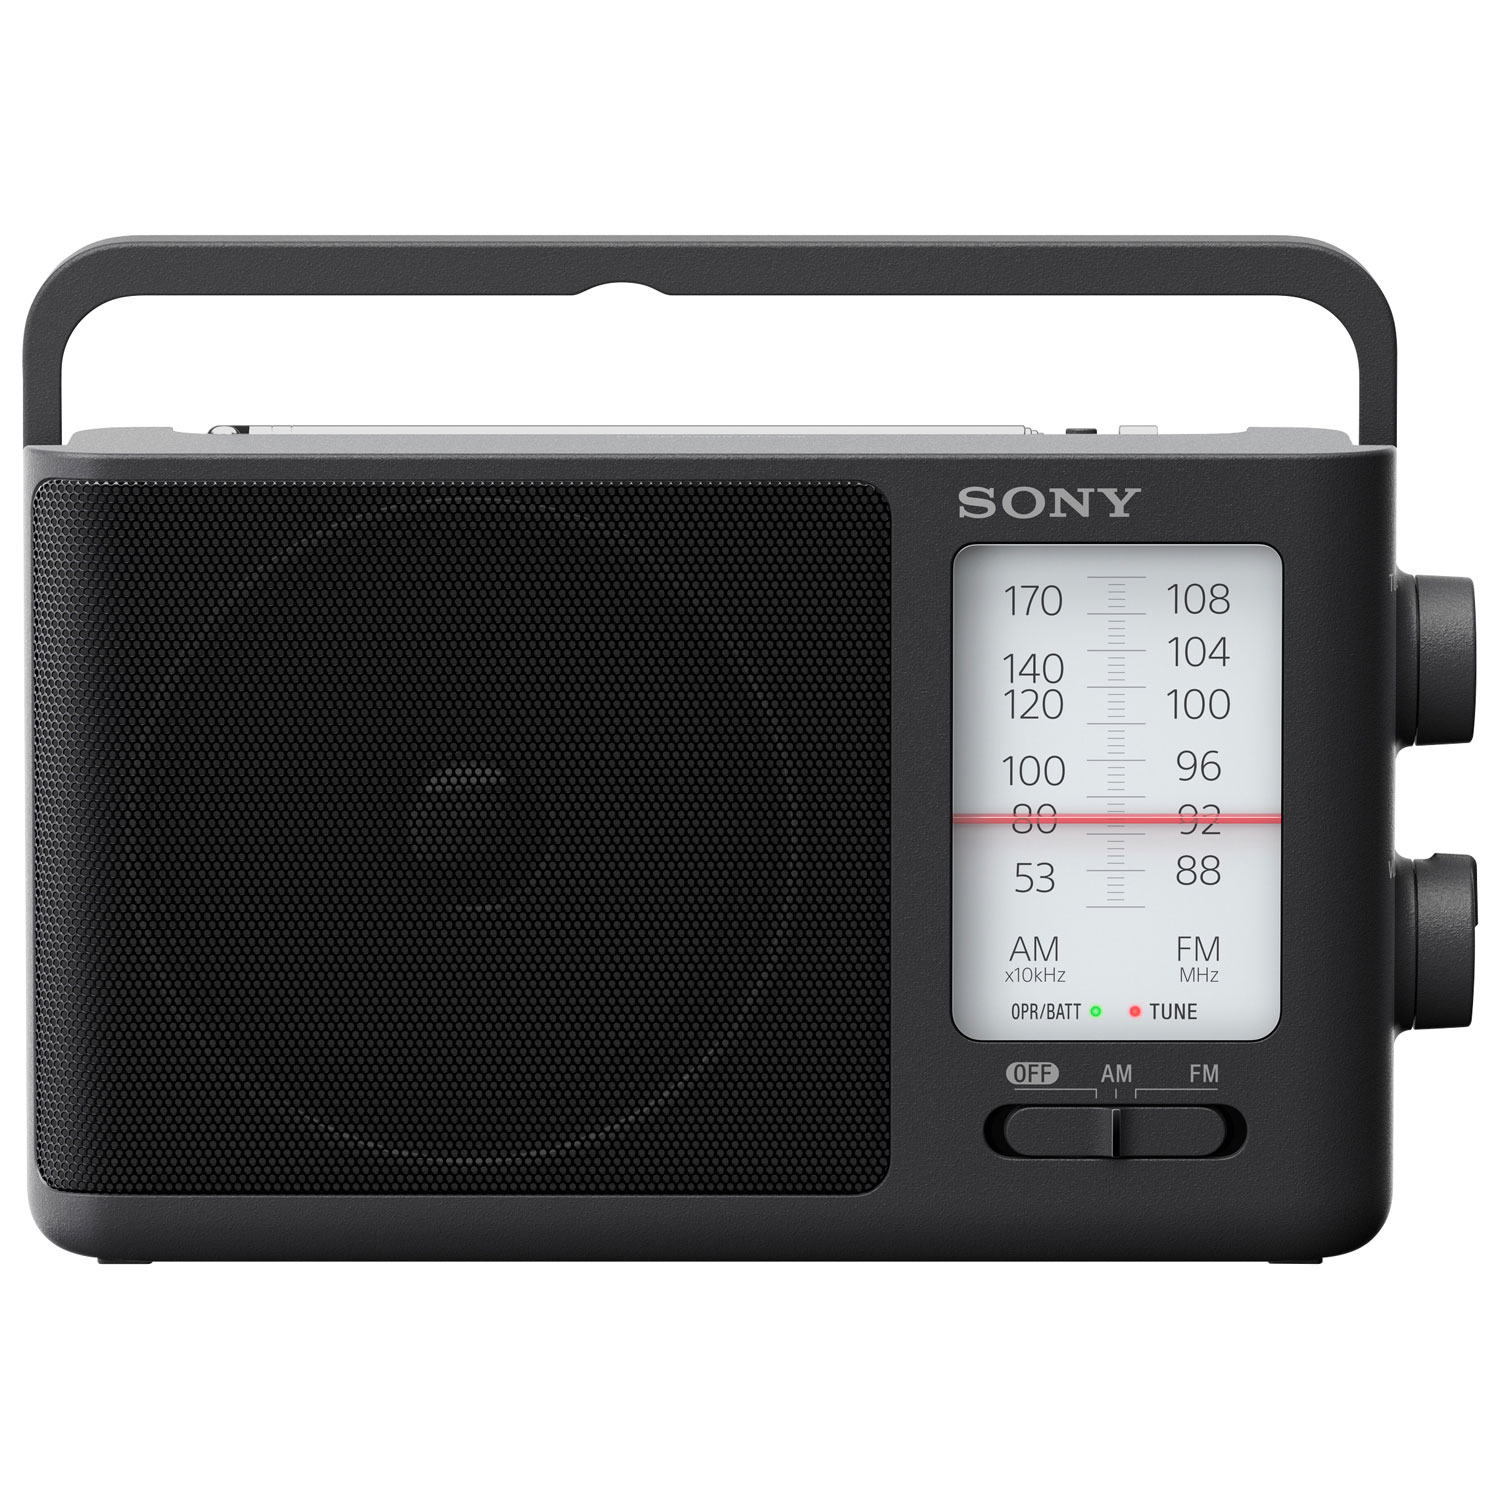 Sony ICF-506 Portable AM/FM Radio - Black